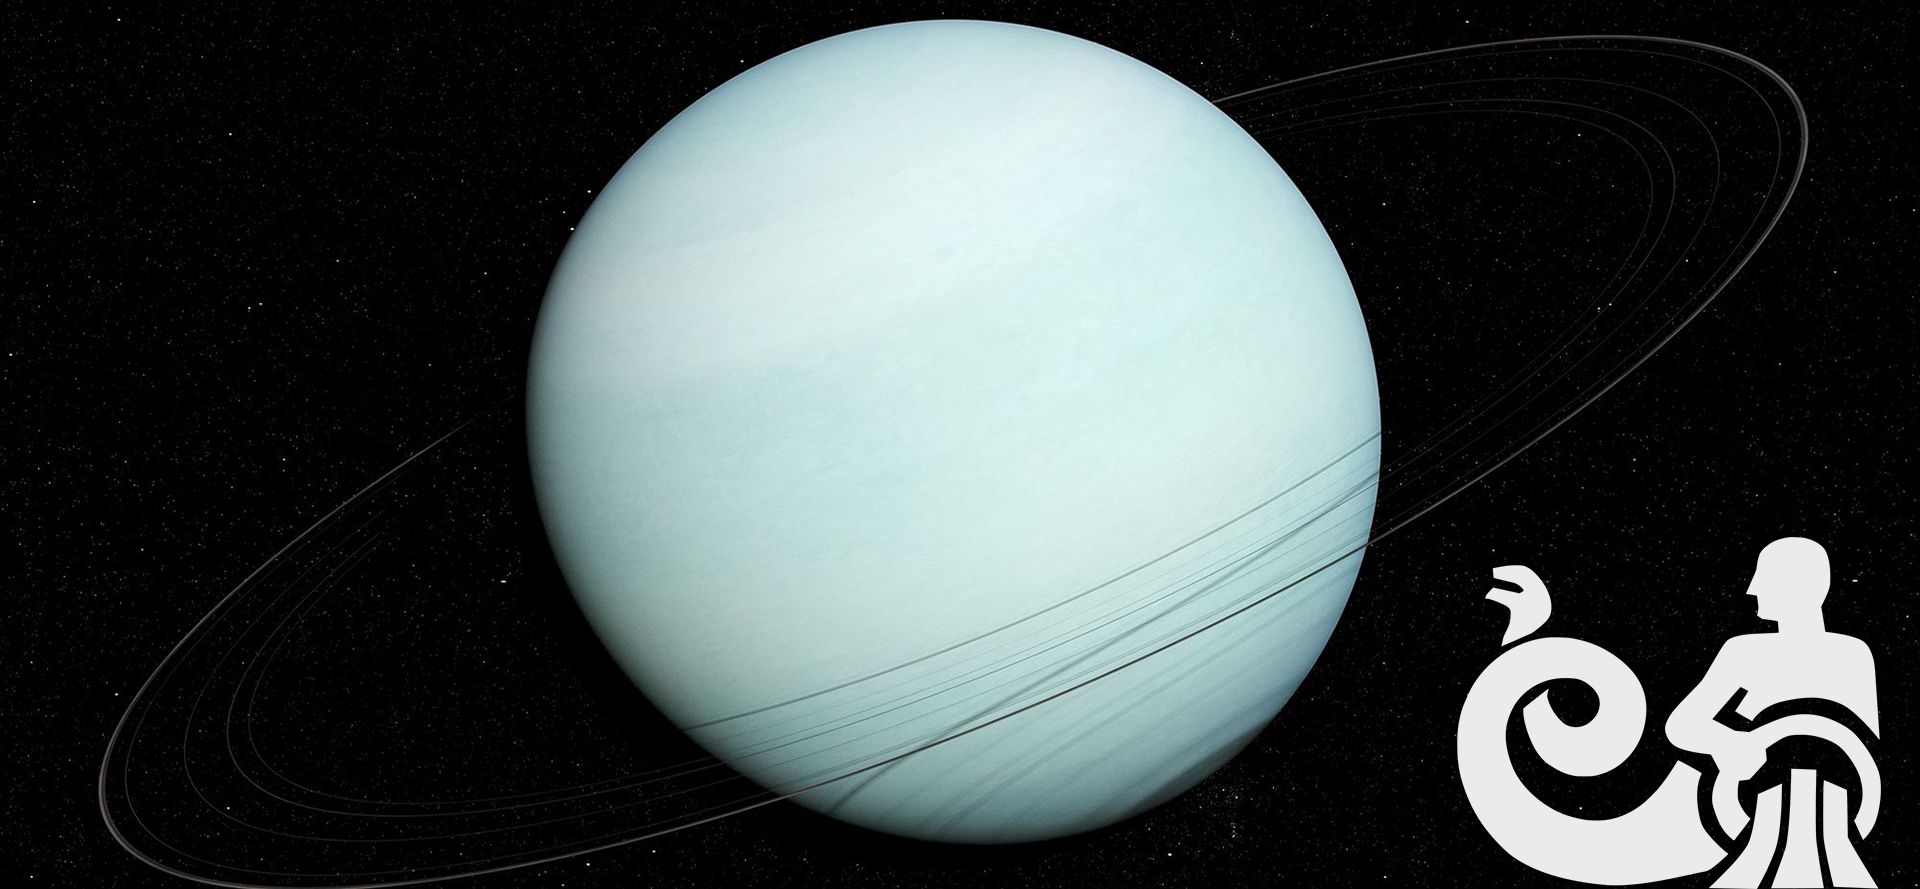 Uranus in Aquarius sign.